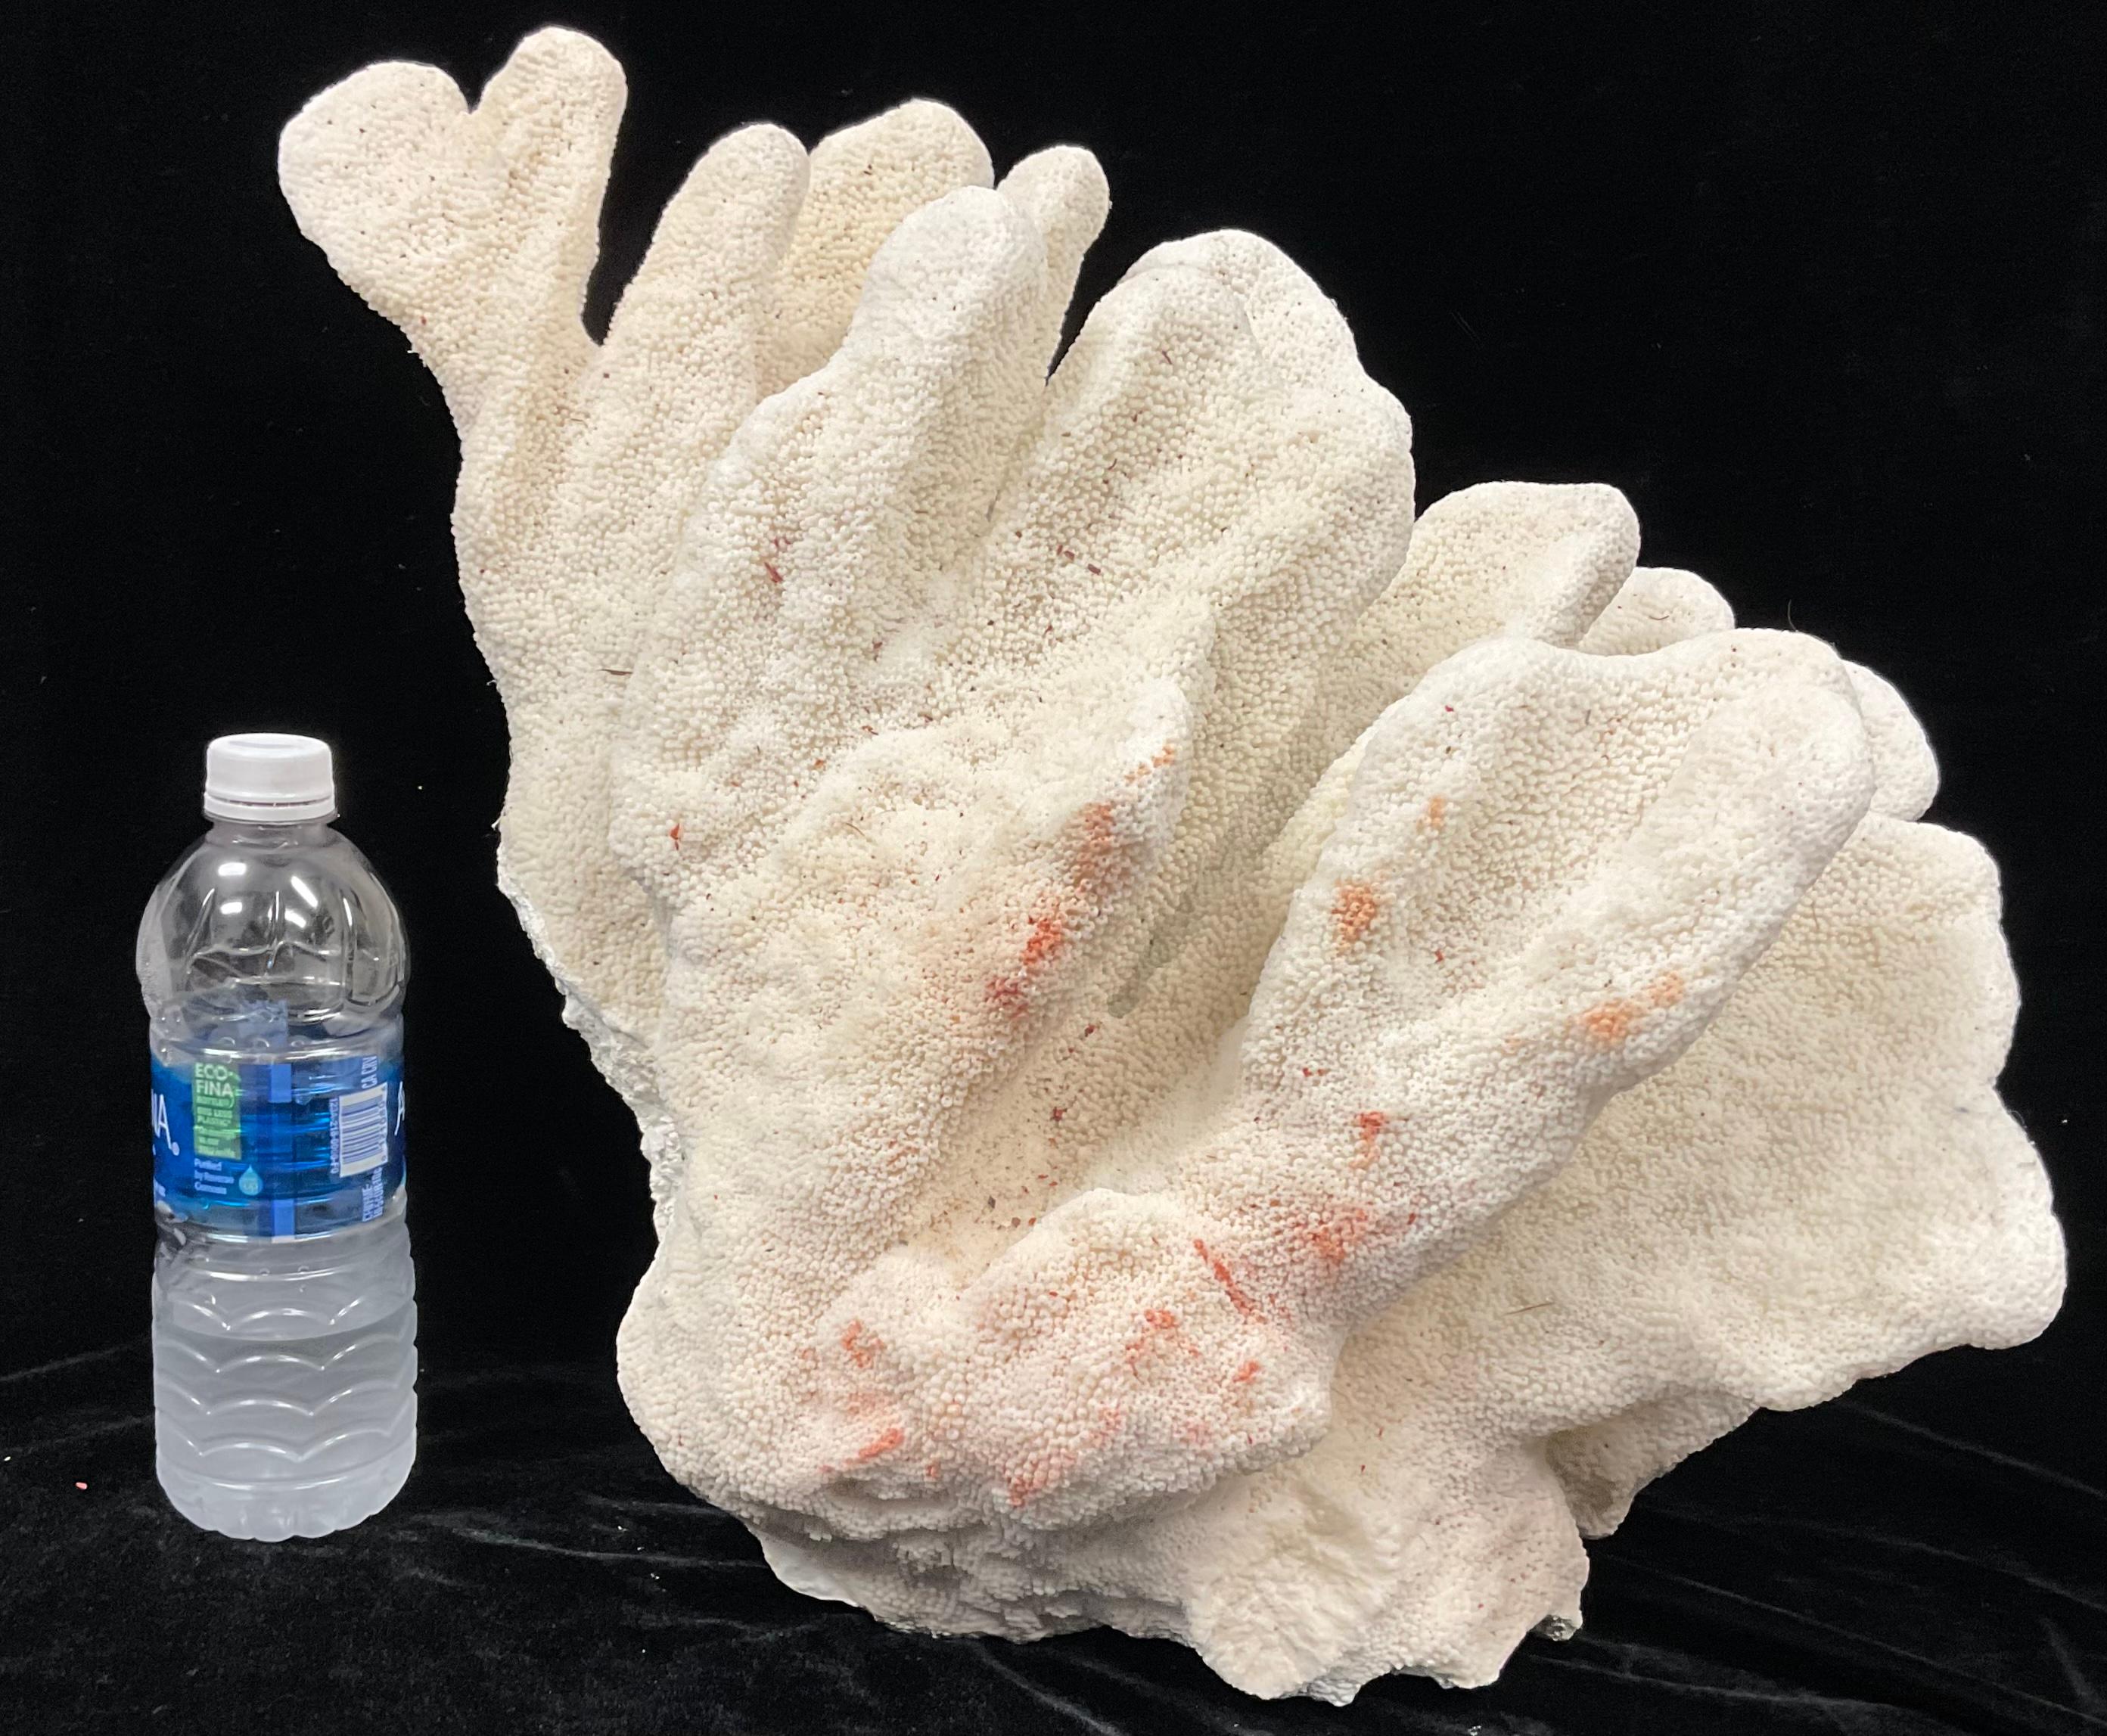 Ein seltenes natürliches Exemplar einer weißen Meereskoralle. Die Farbe ist ein natürliches Weiß. Flache Unterseite zur einfachen Präsentation. Dieses Exemplar hat eine großartige Größe, um es in jeder Einrichtung zu präsentieren.